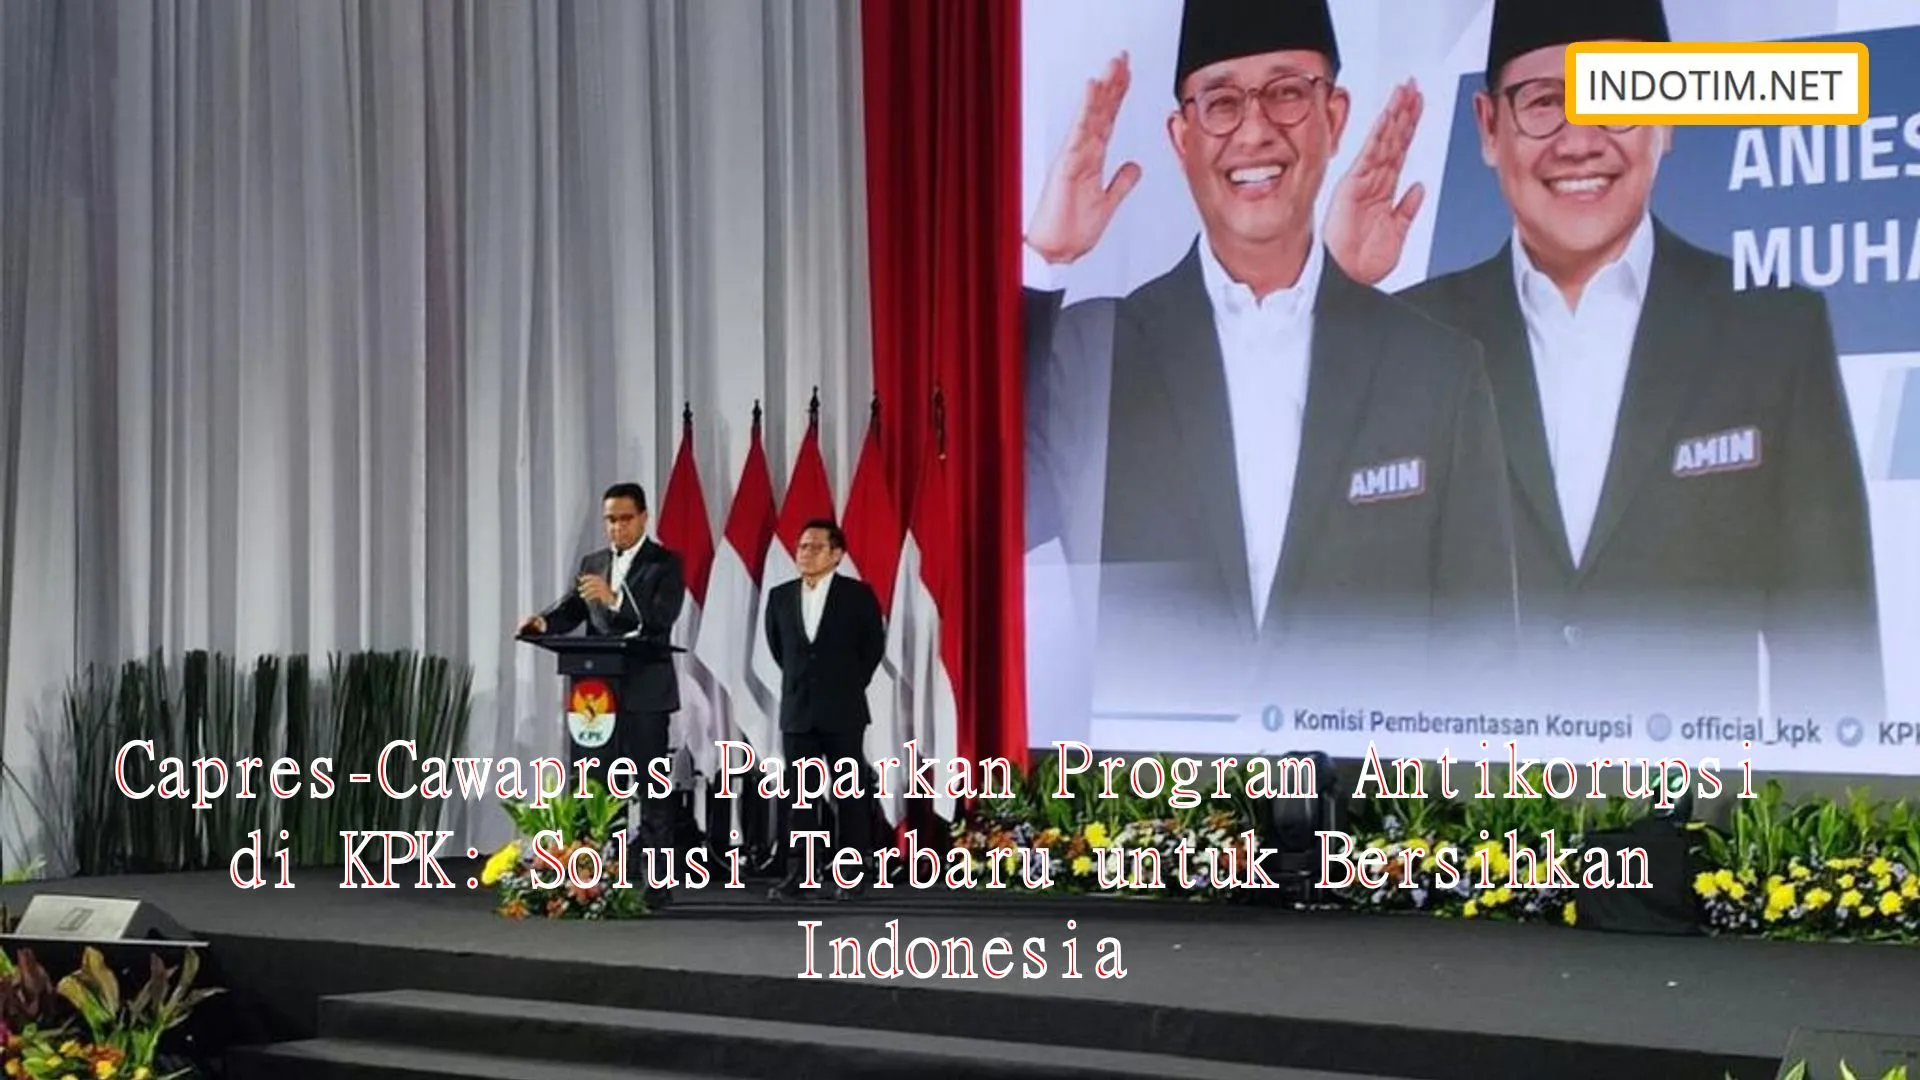 Capres-Cawapres Paparkan Program Antikorupsi di KPK: Solusi Terbaru untuk Bersihkan Indonesia